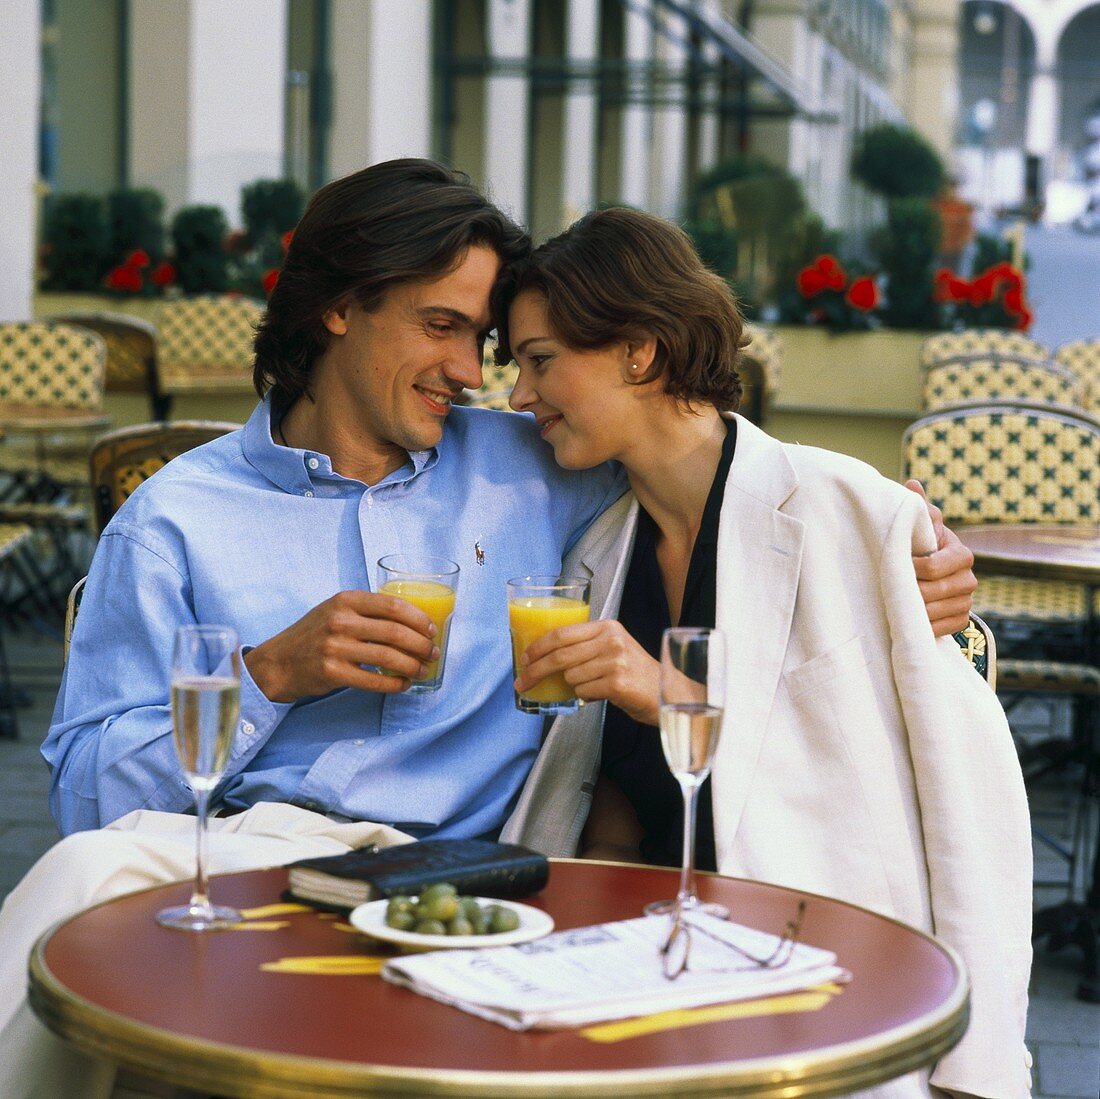 Junges Paar am Tisch eines Cafes mit Orangesaft, Sekt, Oliven